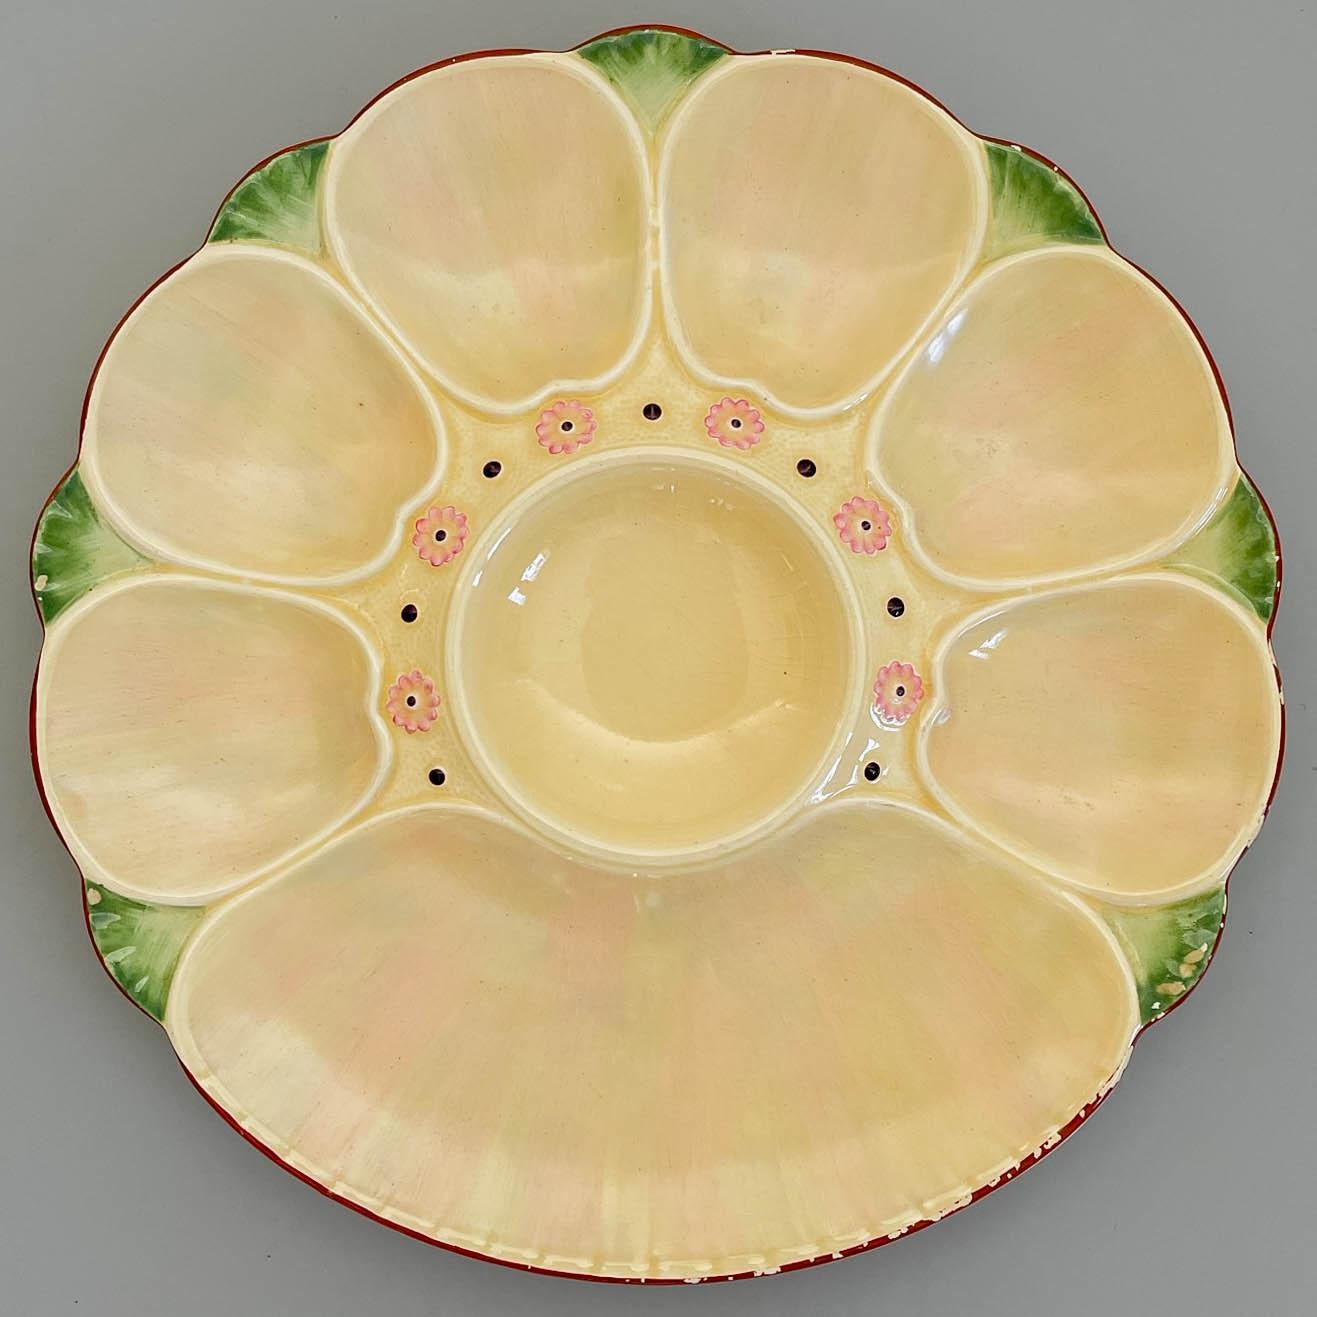 Ein Paar englische Minton-Majolika-Austernteller des späten 19. Jahrhunderts mit sechs Austernmulden und einer großen Mulde für Cracker, die eine mittlere Mulde für Sauce umgibt. Leuchtend cremefarbene und rosafarbene Glasur mit blassgrünen